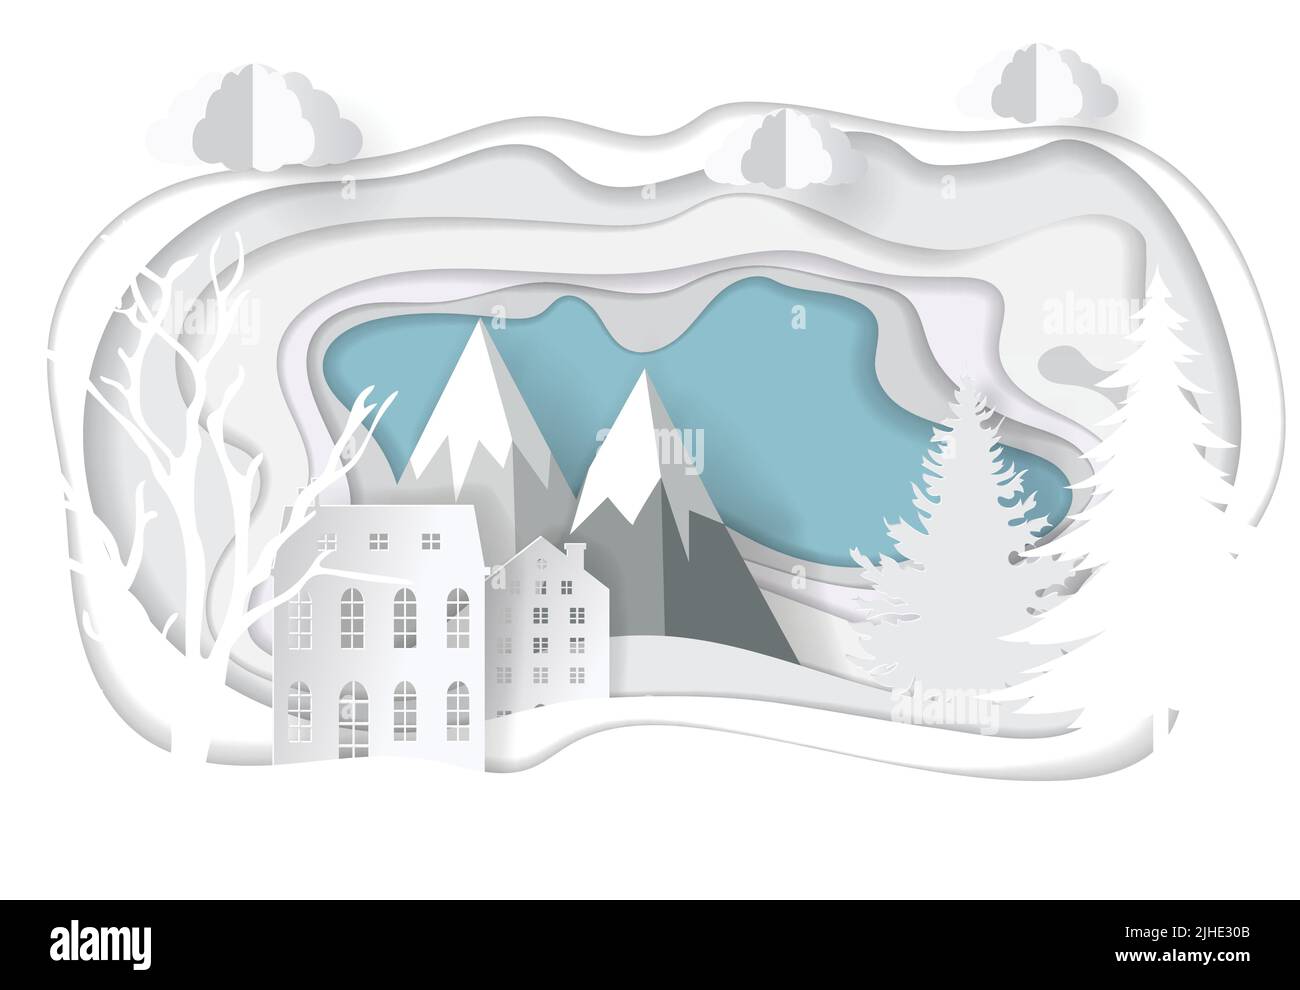 Carta vettoriale art. Modello di illustrazione di Natale per biglietto di auguri, calendario o ecc paesaggio invernale con cervi e montagne Illustrazione Vettoriale